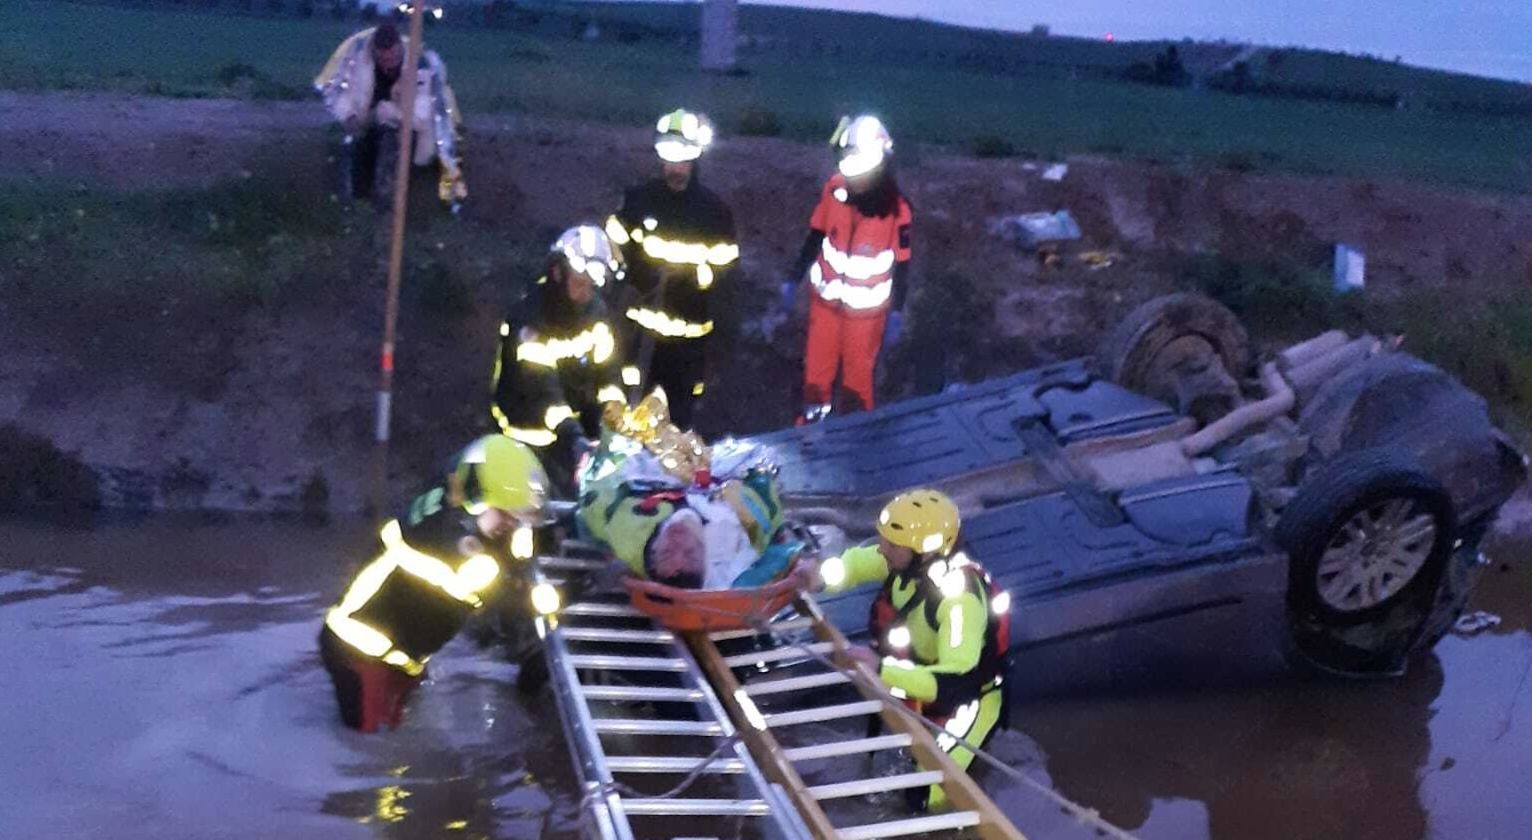 Un vehículo quedó bocabajo en un canal de agua en un accidente de tráfico en Sanlúcar.